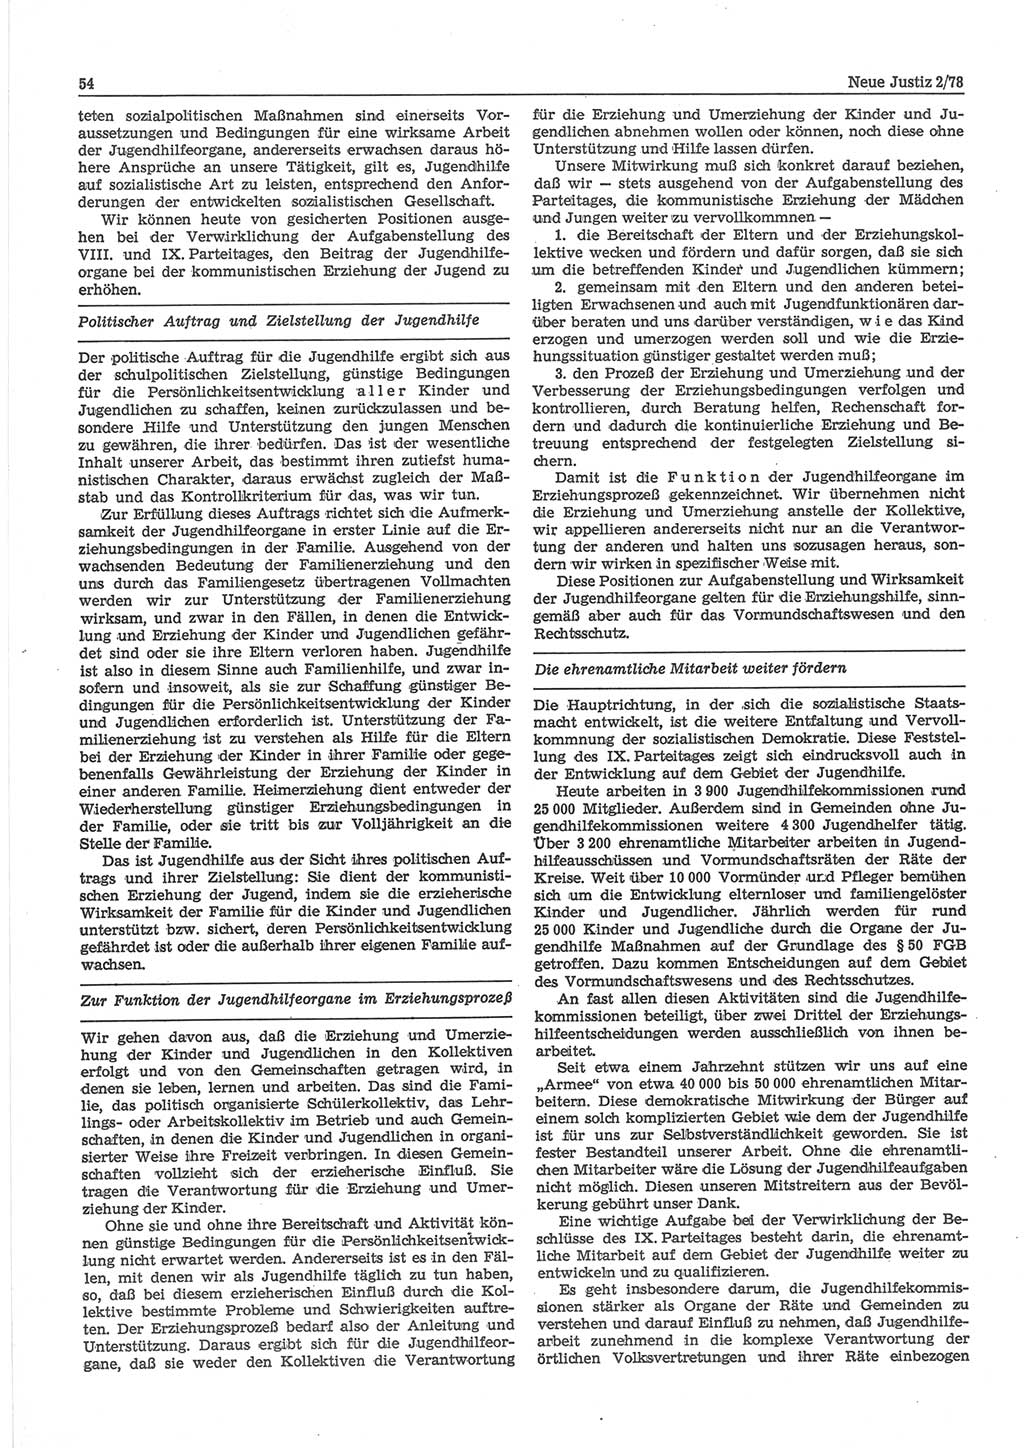 Neue Justiz (NJ), Zeitschrift für sozialistisches Recht und Gesetzlichkeit [Deutsche Demokratische Republik (DDR)], 32. Jahrgang 1978, Seite 54 (NJ DDR 1978, S. 54)